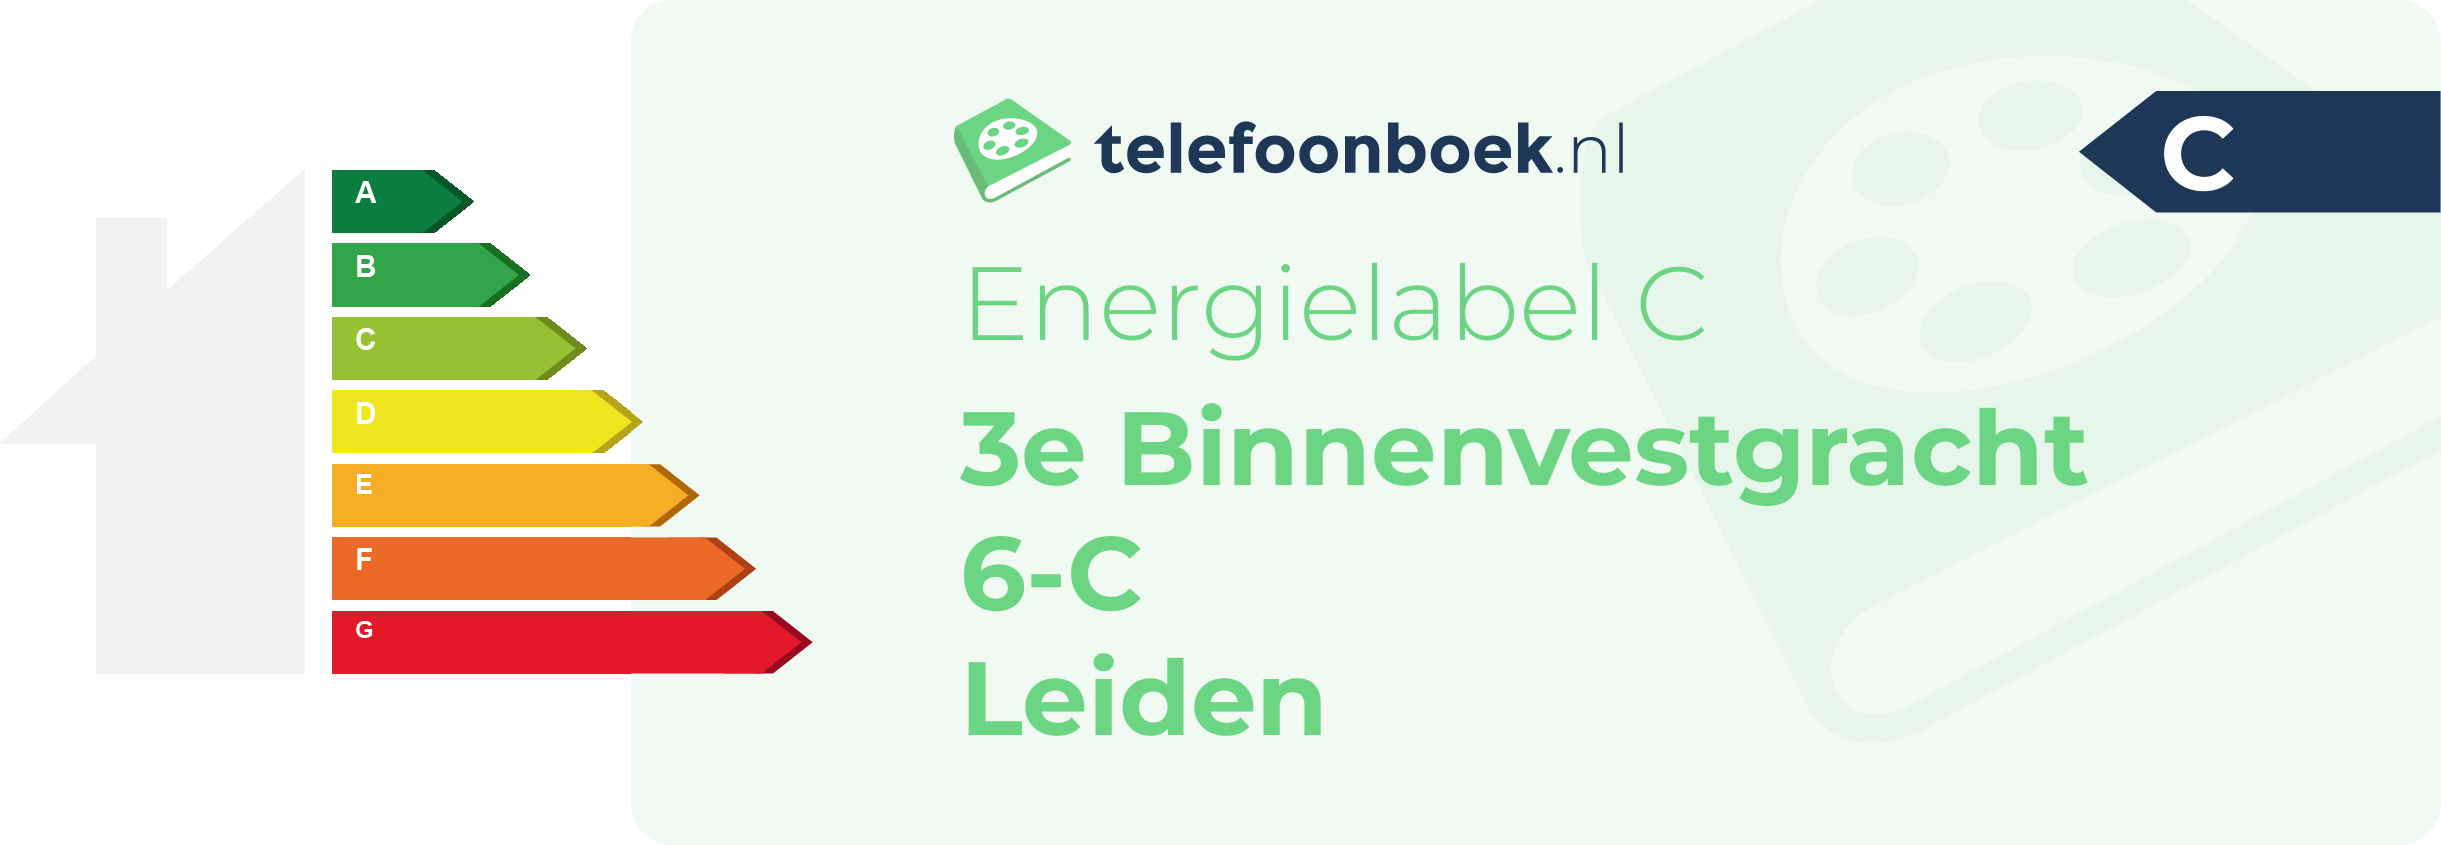 Energielabel 3e Binnenvestgracht 6-C Leiden